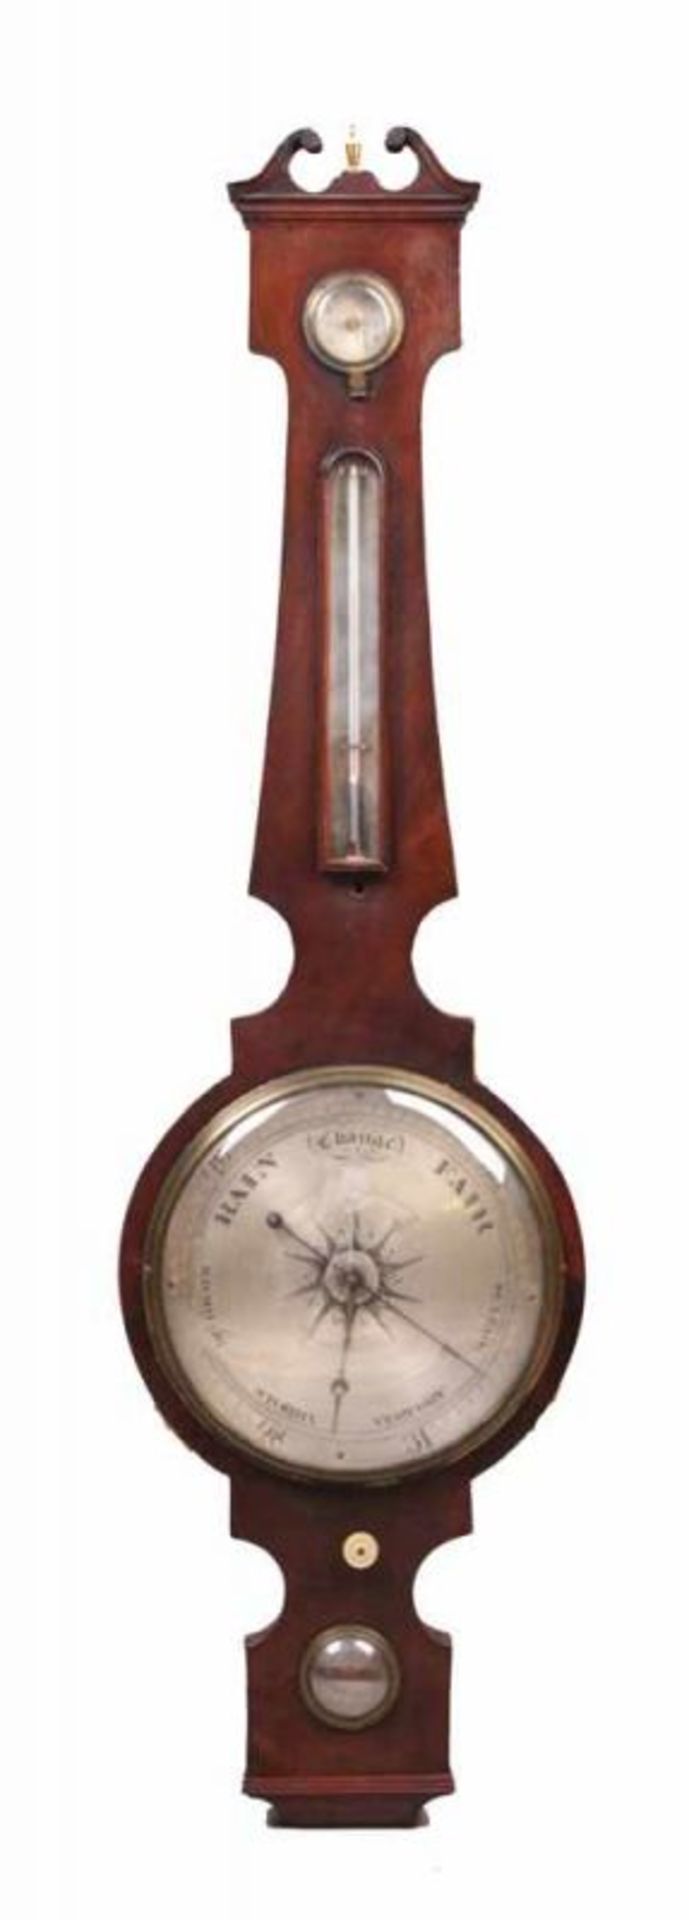 Barometer.London, um 1840/50. Mahagoni furniert. Hygrometer, Thermometer und Barometer. Bez.: "